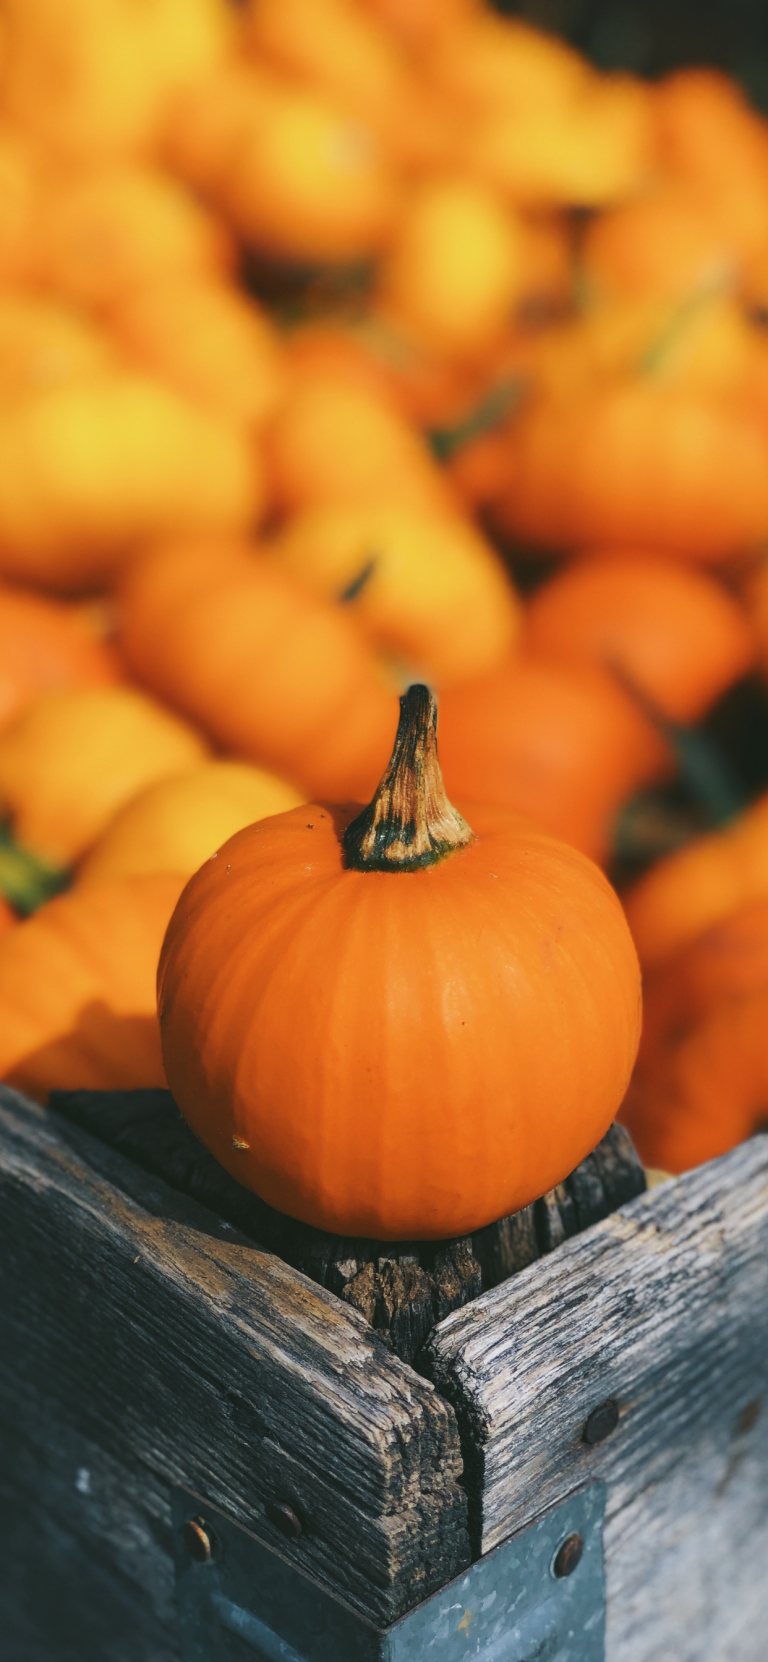 pumpkin-orange-autumn-aaron-burden-idownloadblog-iphone-xs-max-wallpaper-768×1662